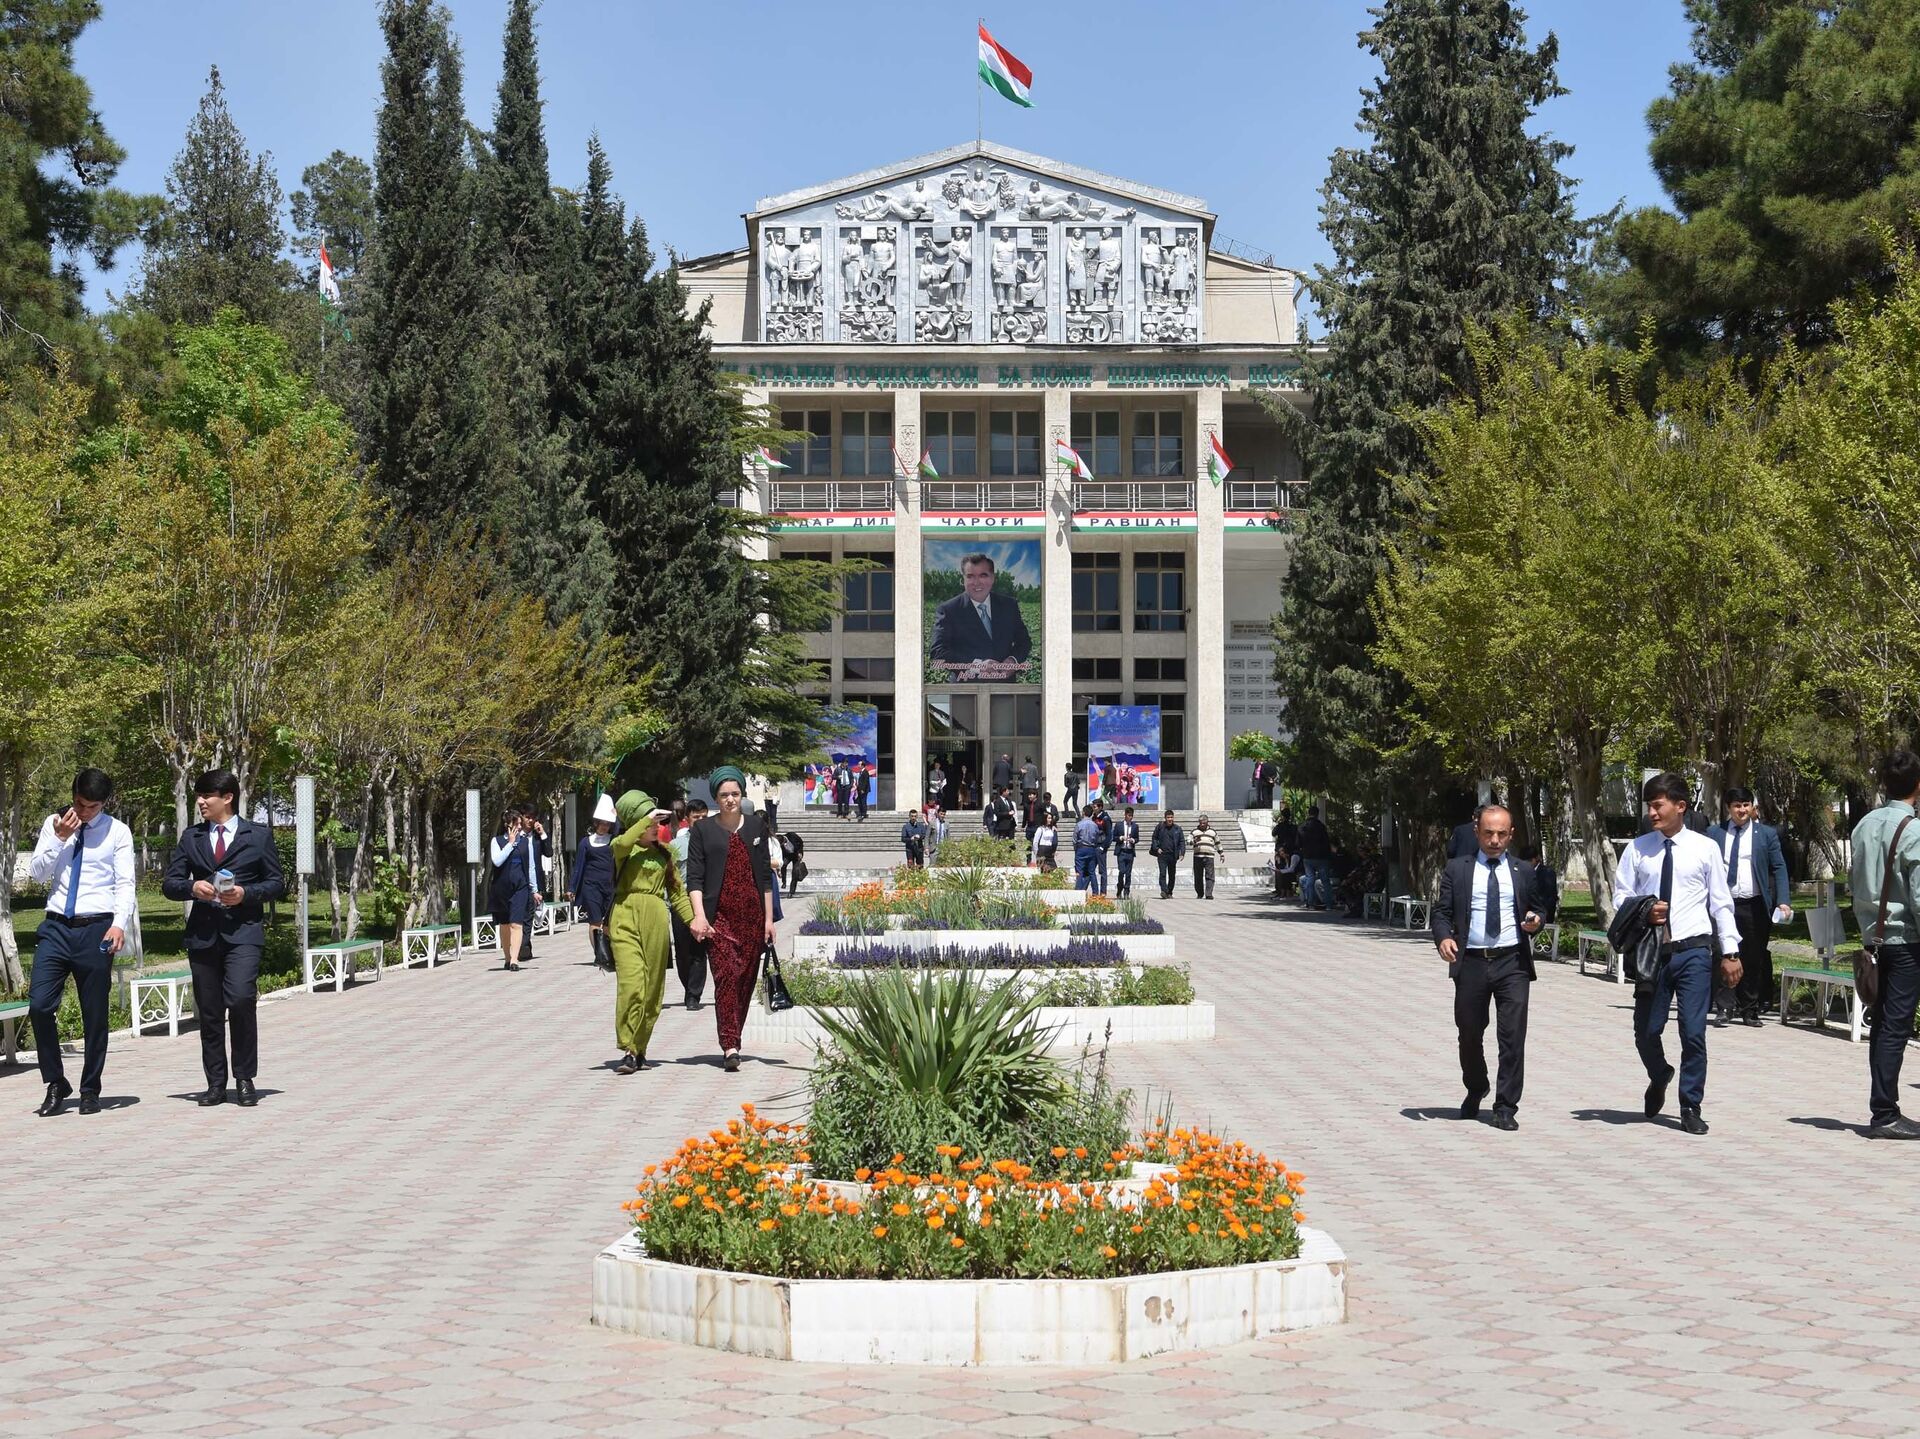 Таджикский аграрный университет имени Шириншох Шотемур